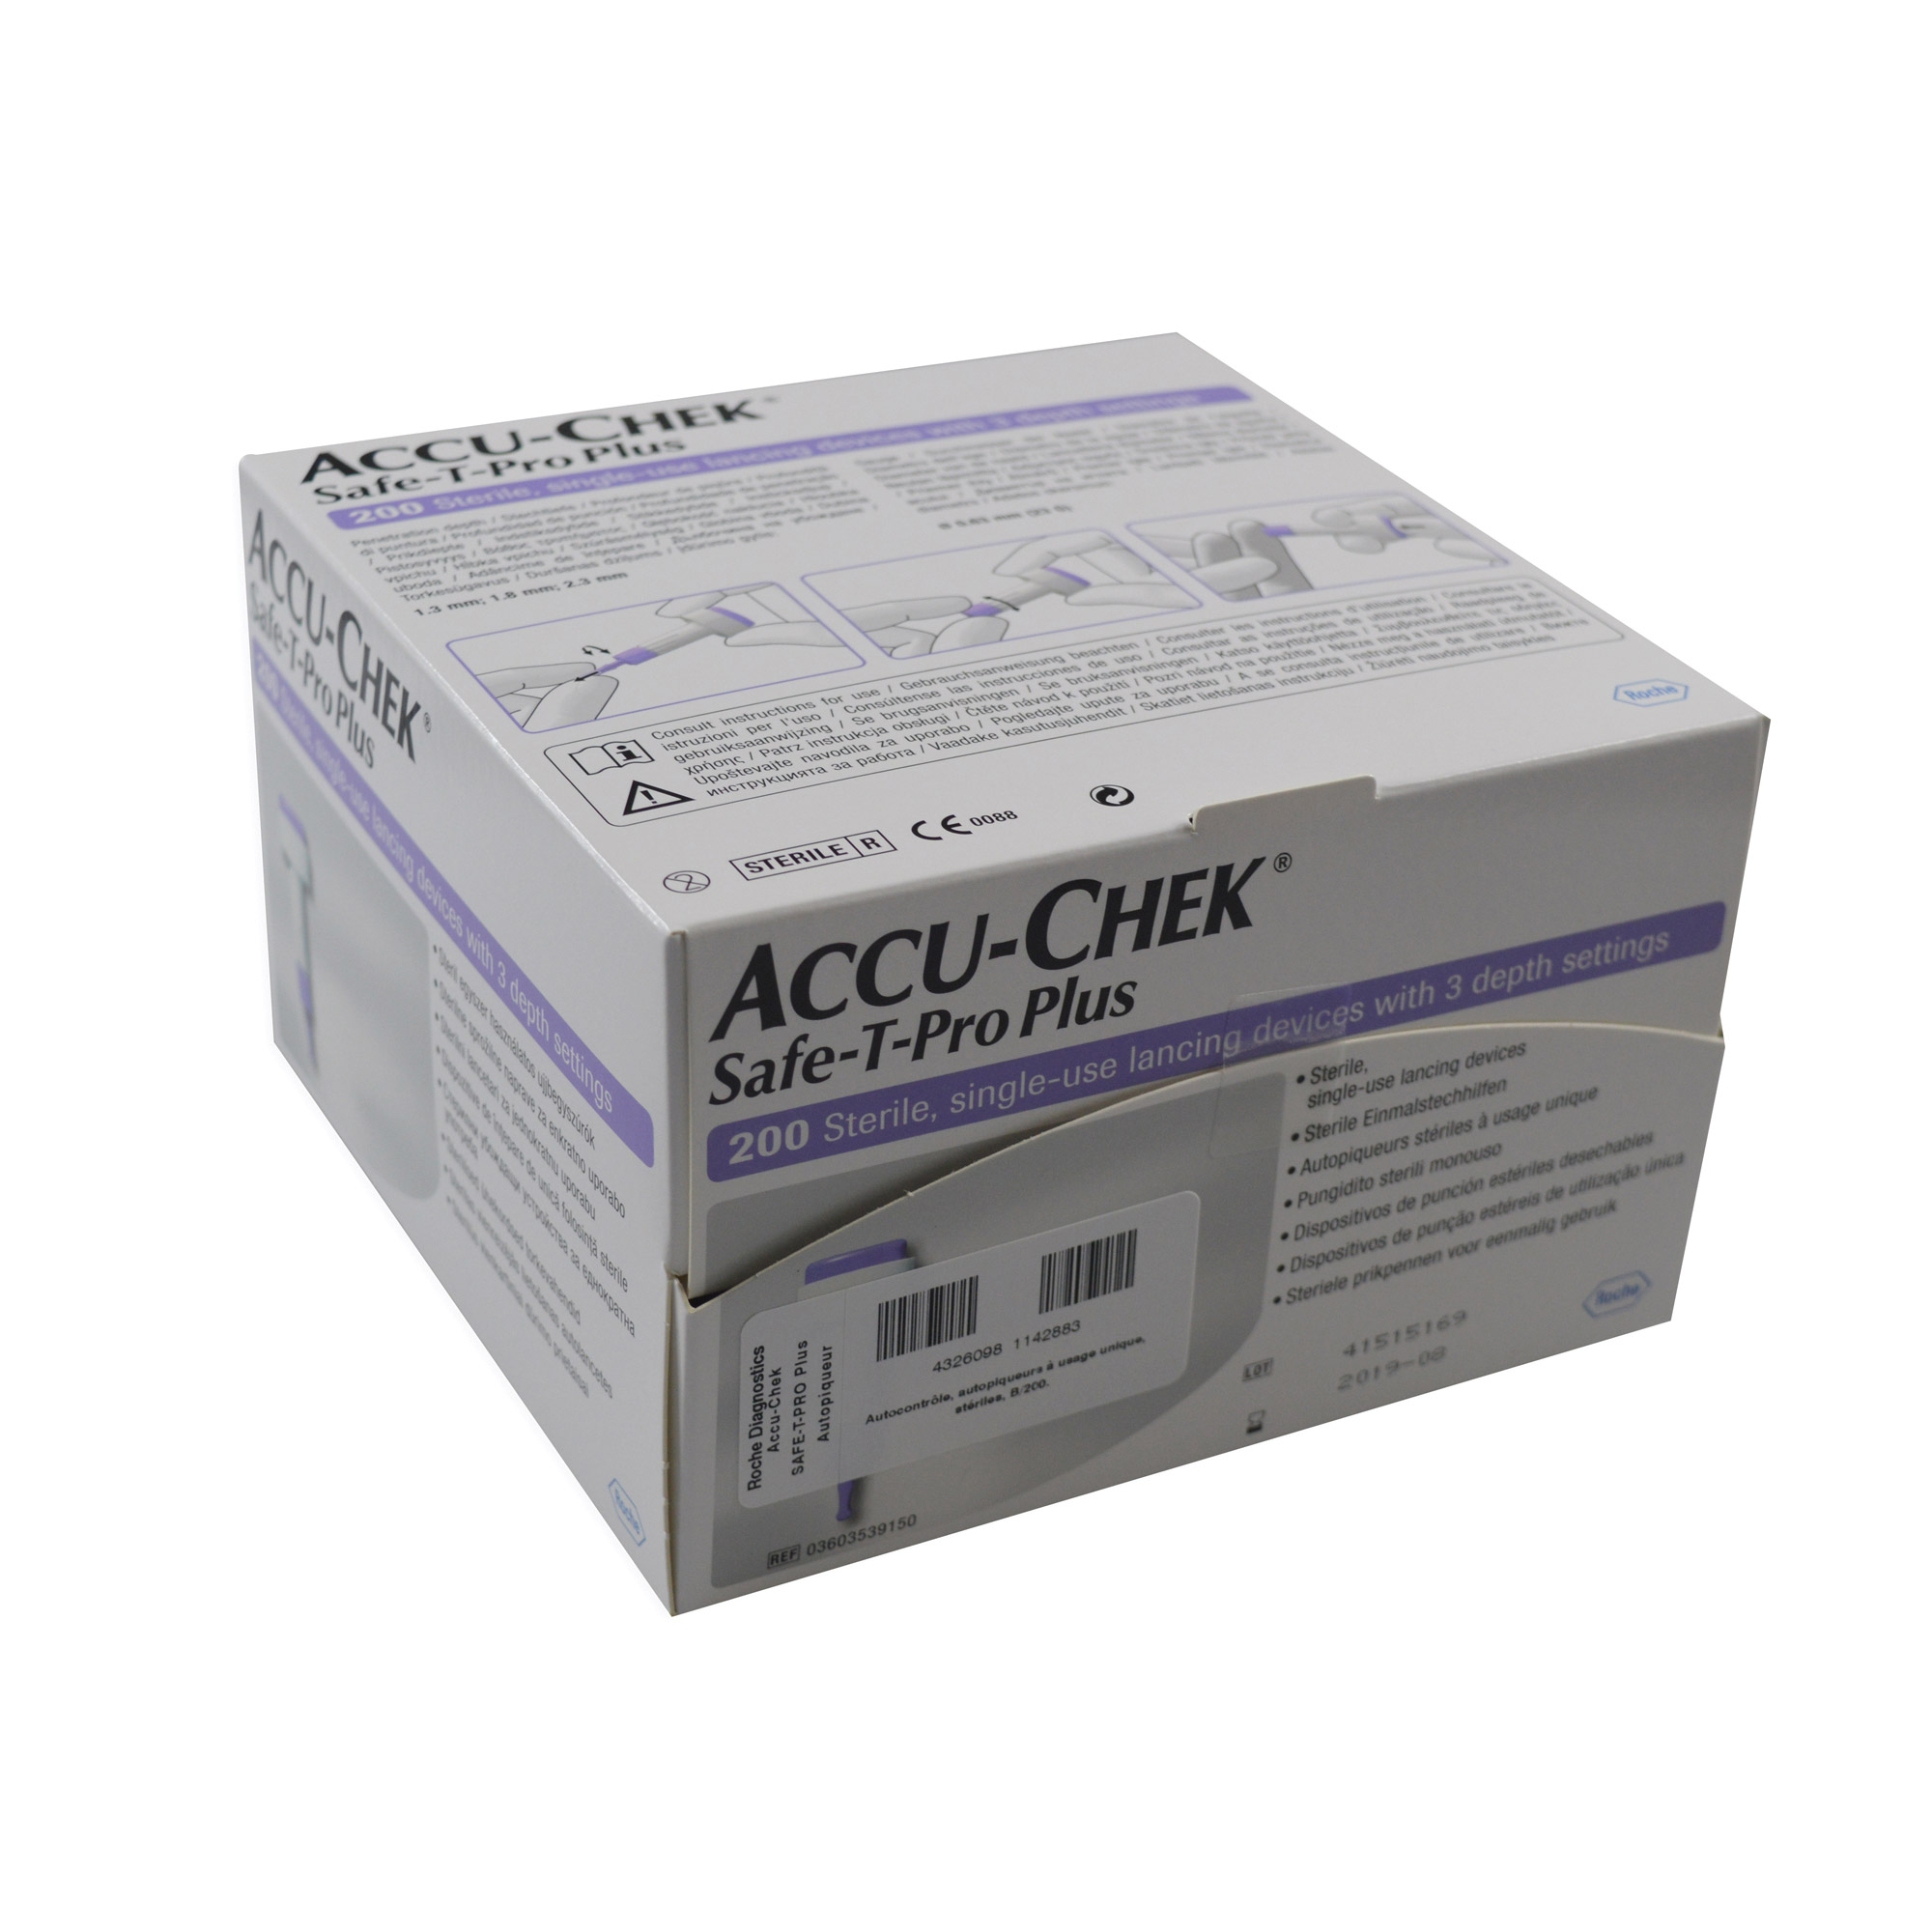 Accu-check Safe-T-Pro Plus Lancets 200 PACK